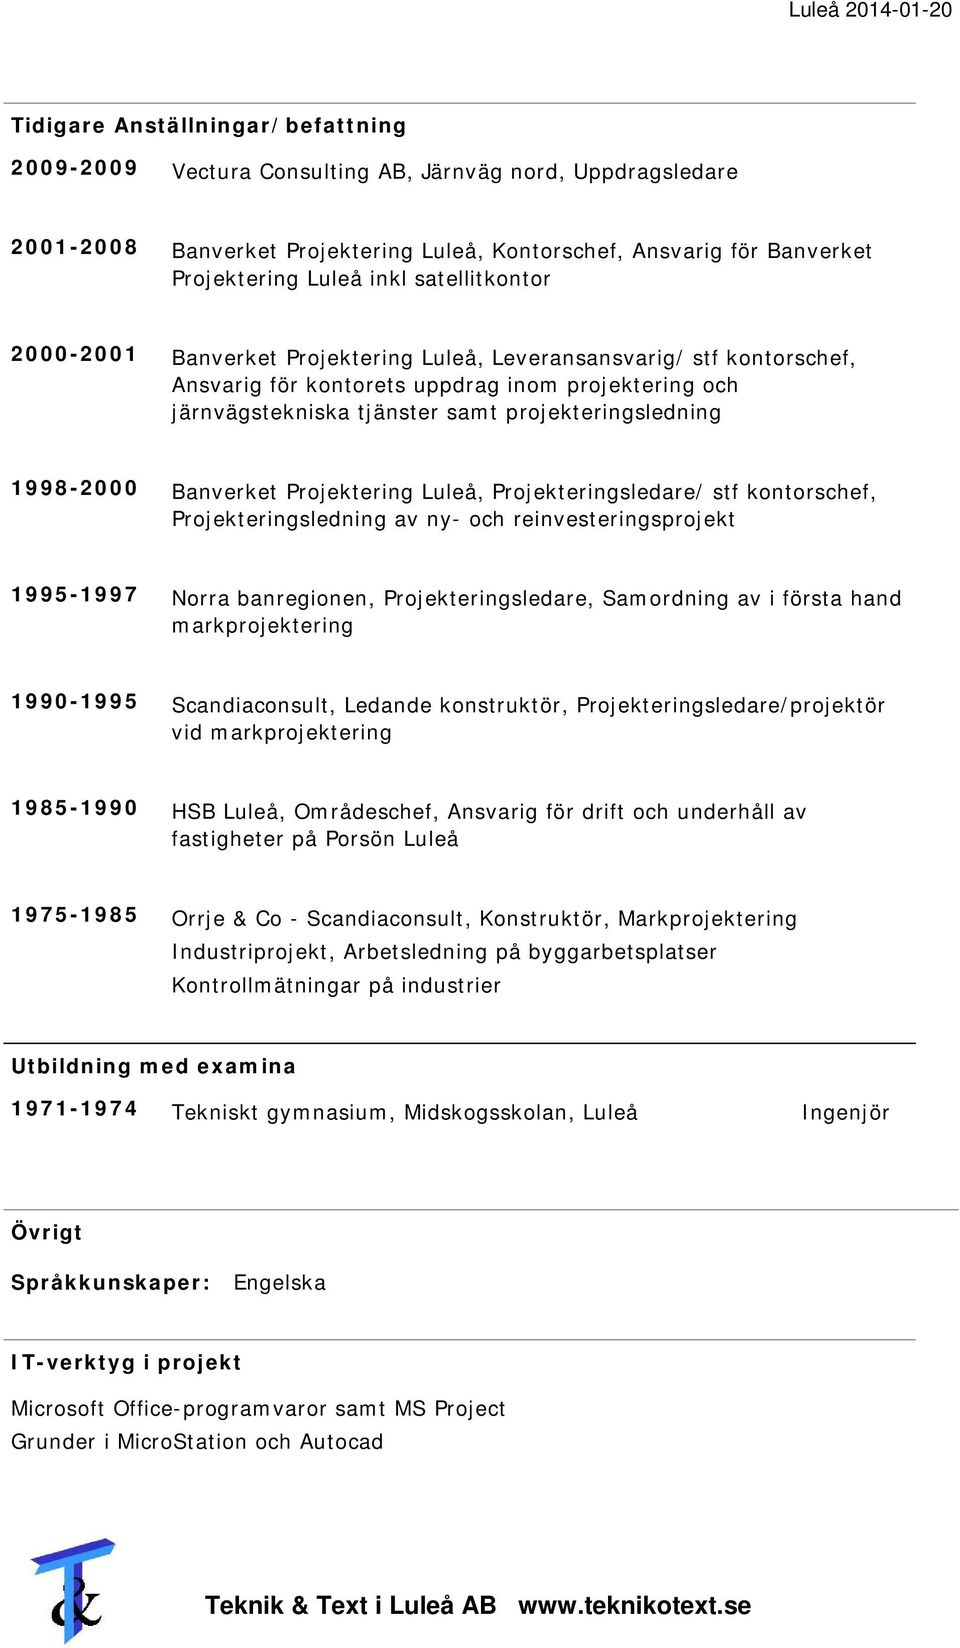 1998-2000 Banverket Projektering Luleå, Projekteringsledare/ stf kontorschef, Projekteringsledning av ny- och reinvesteringsprojekt 1995-1997 Norra banregionen, Projekteringsledare, Samordning av i